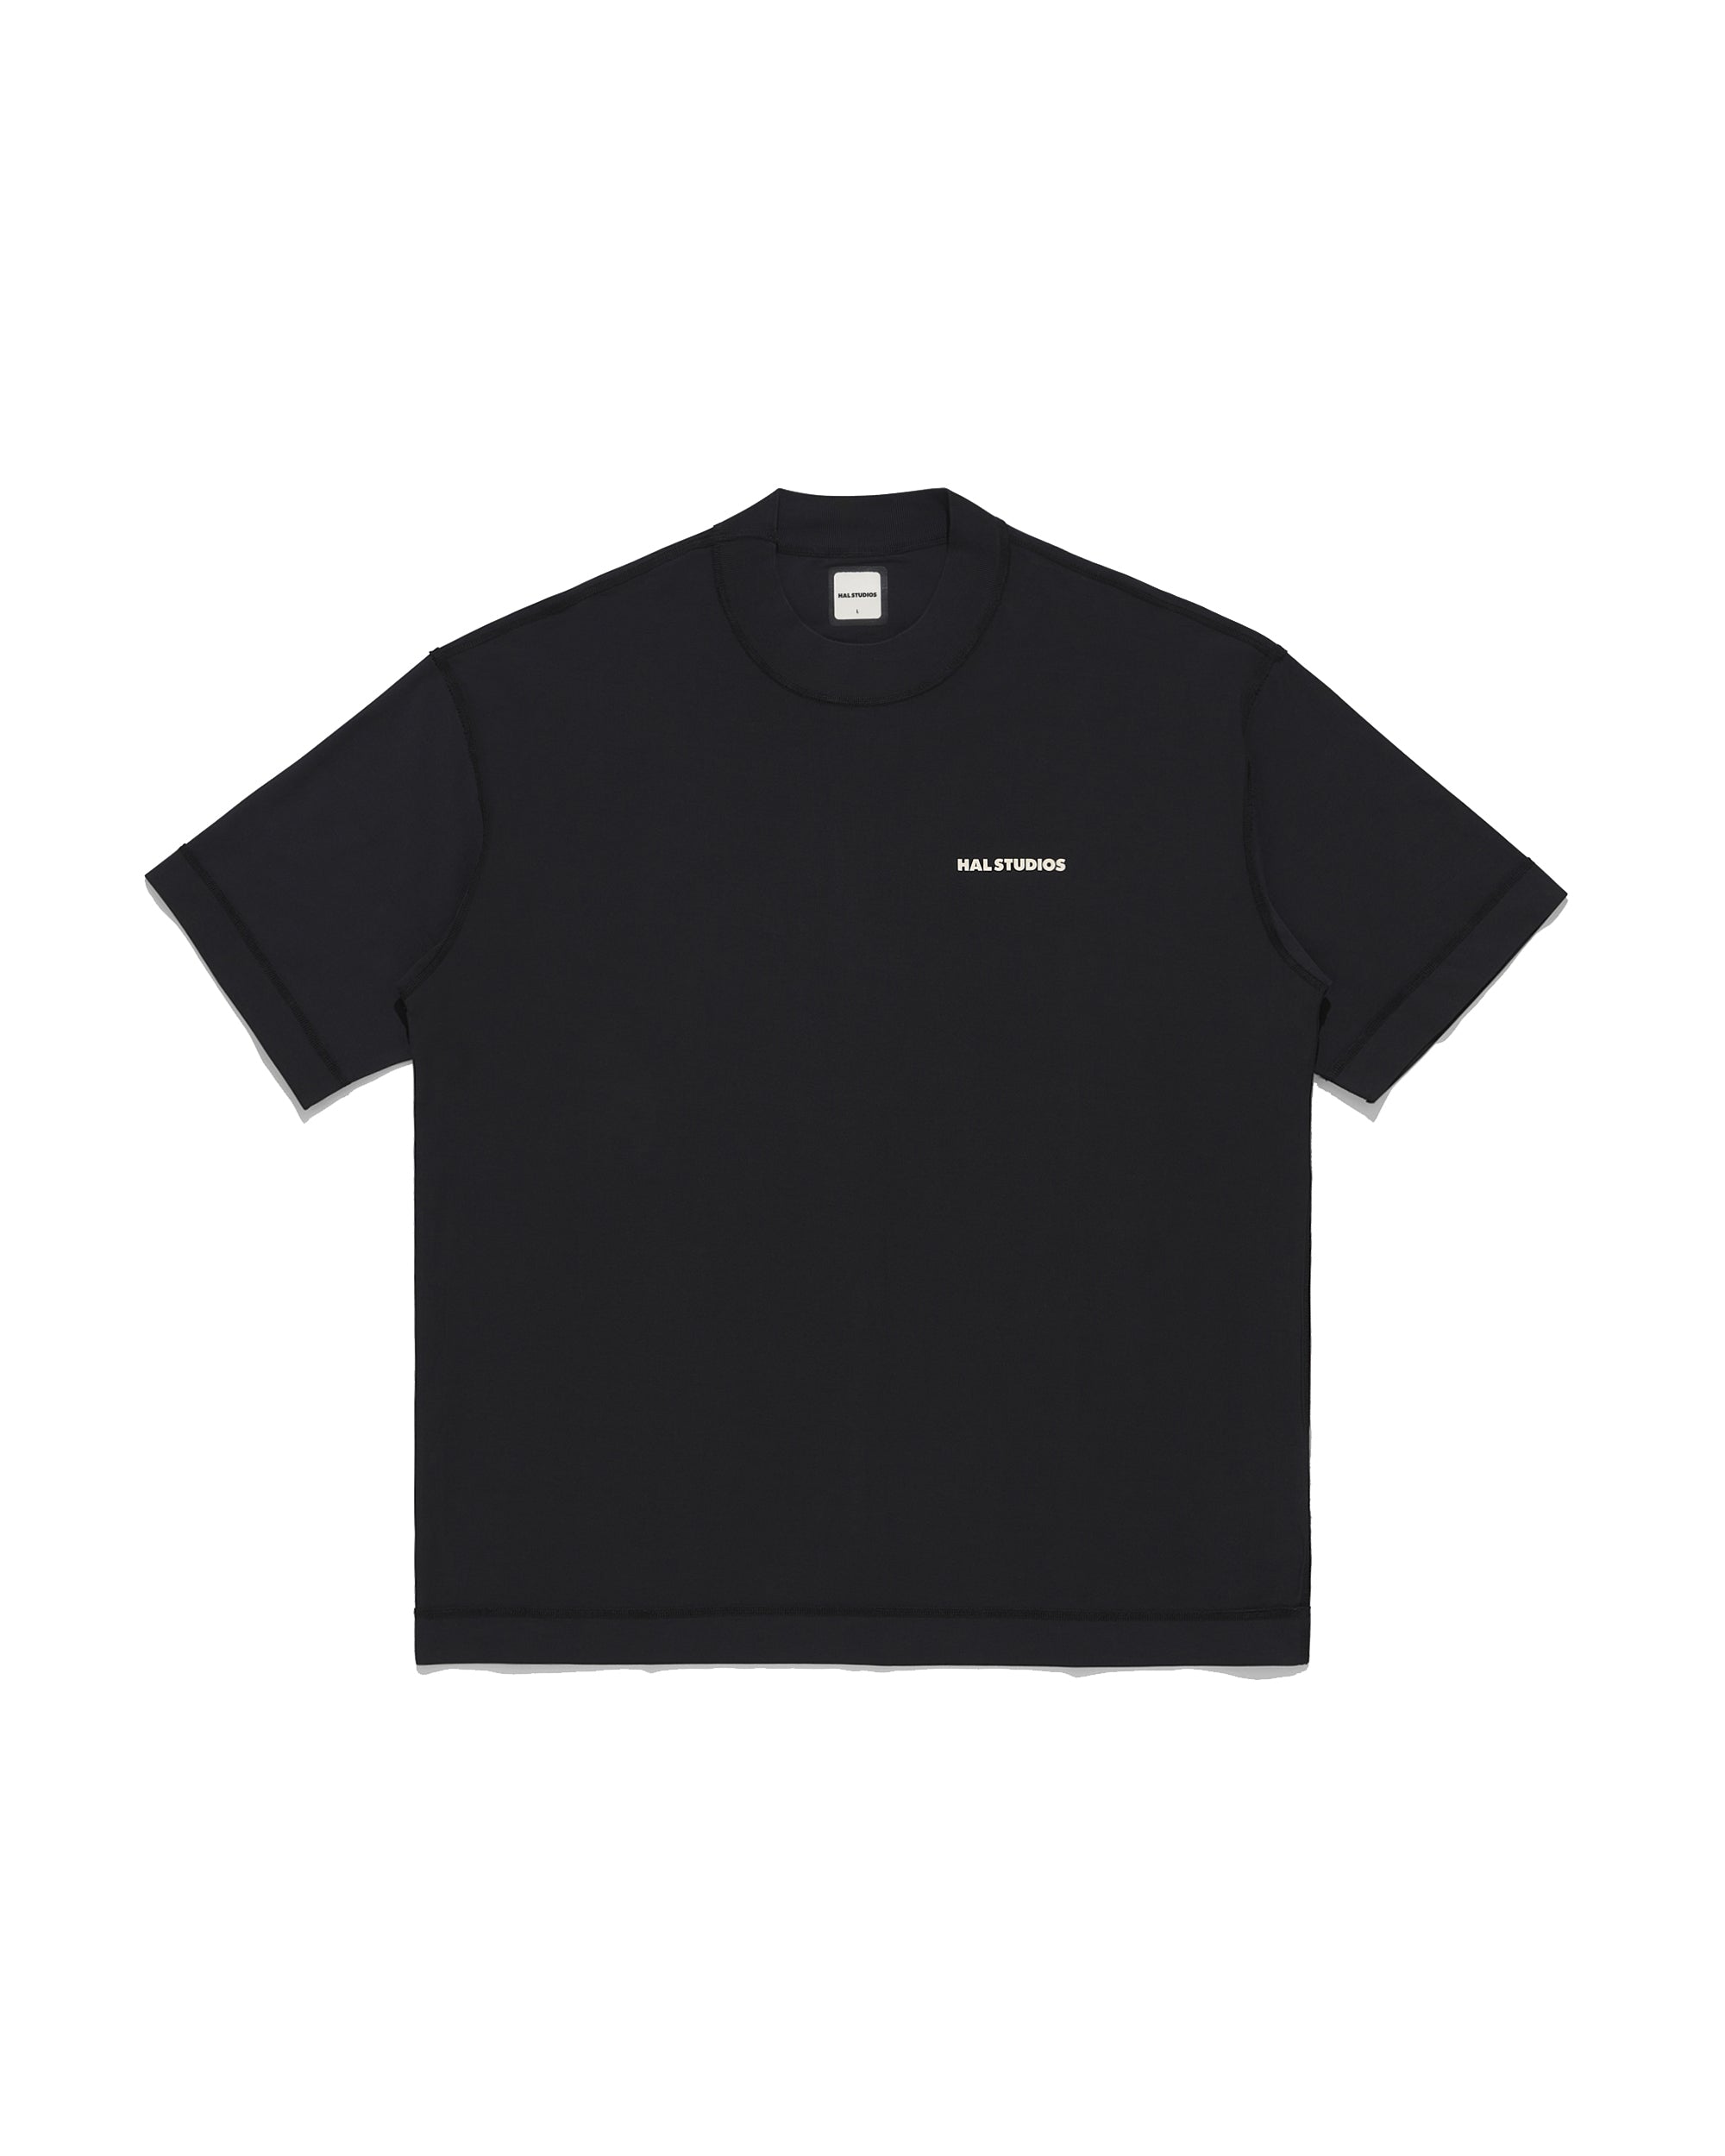 Inside Out Uniform T-Shirt - Black